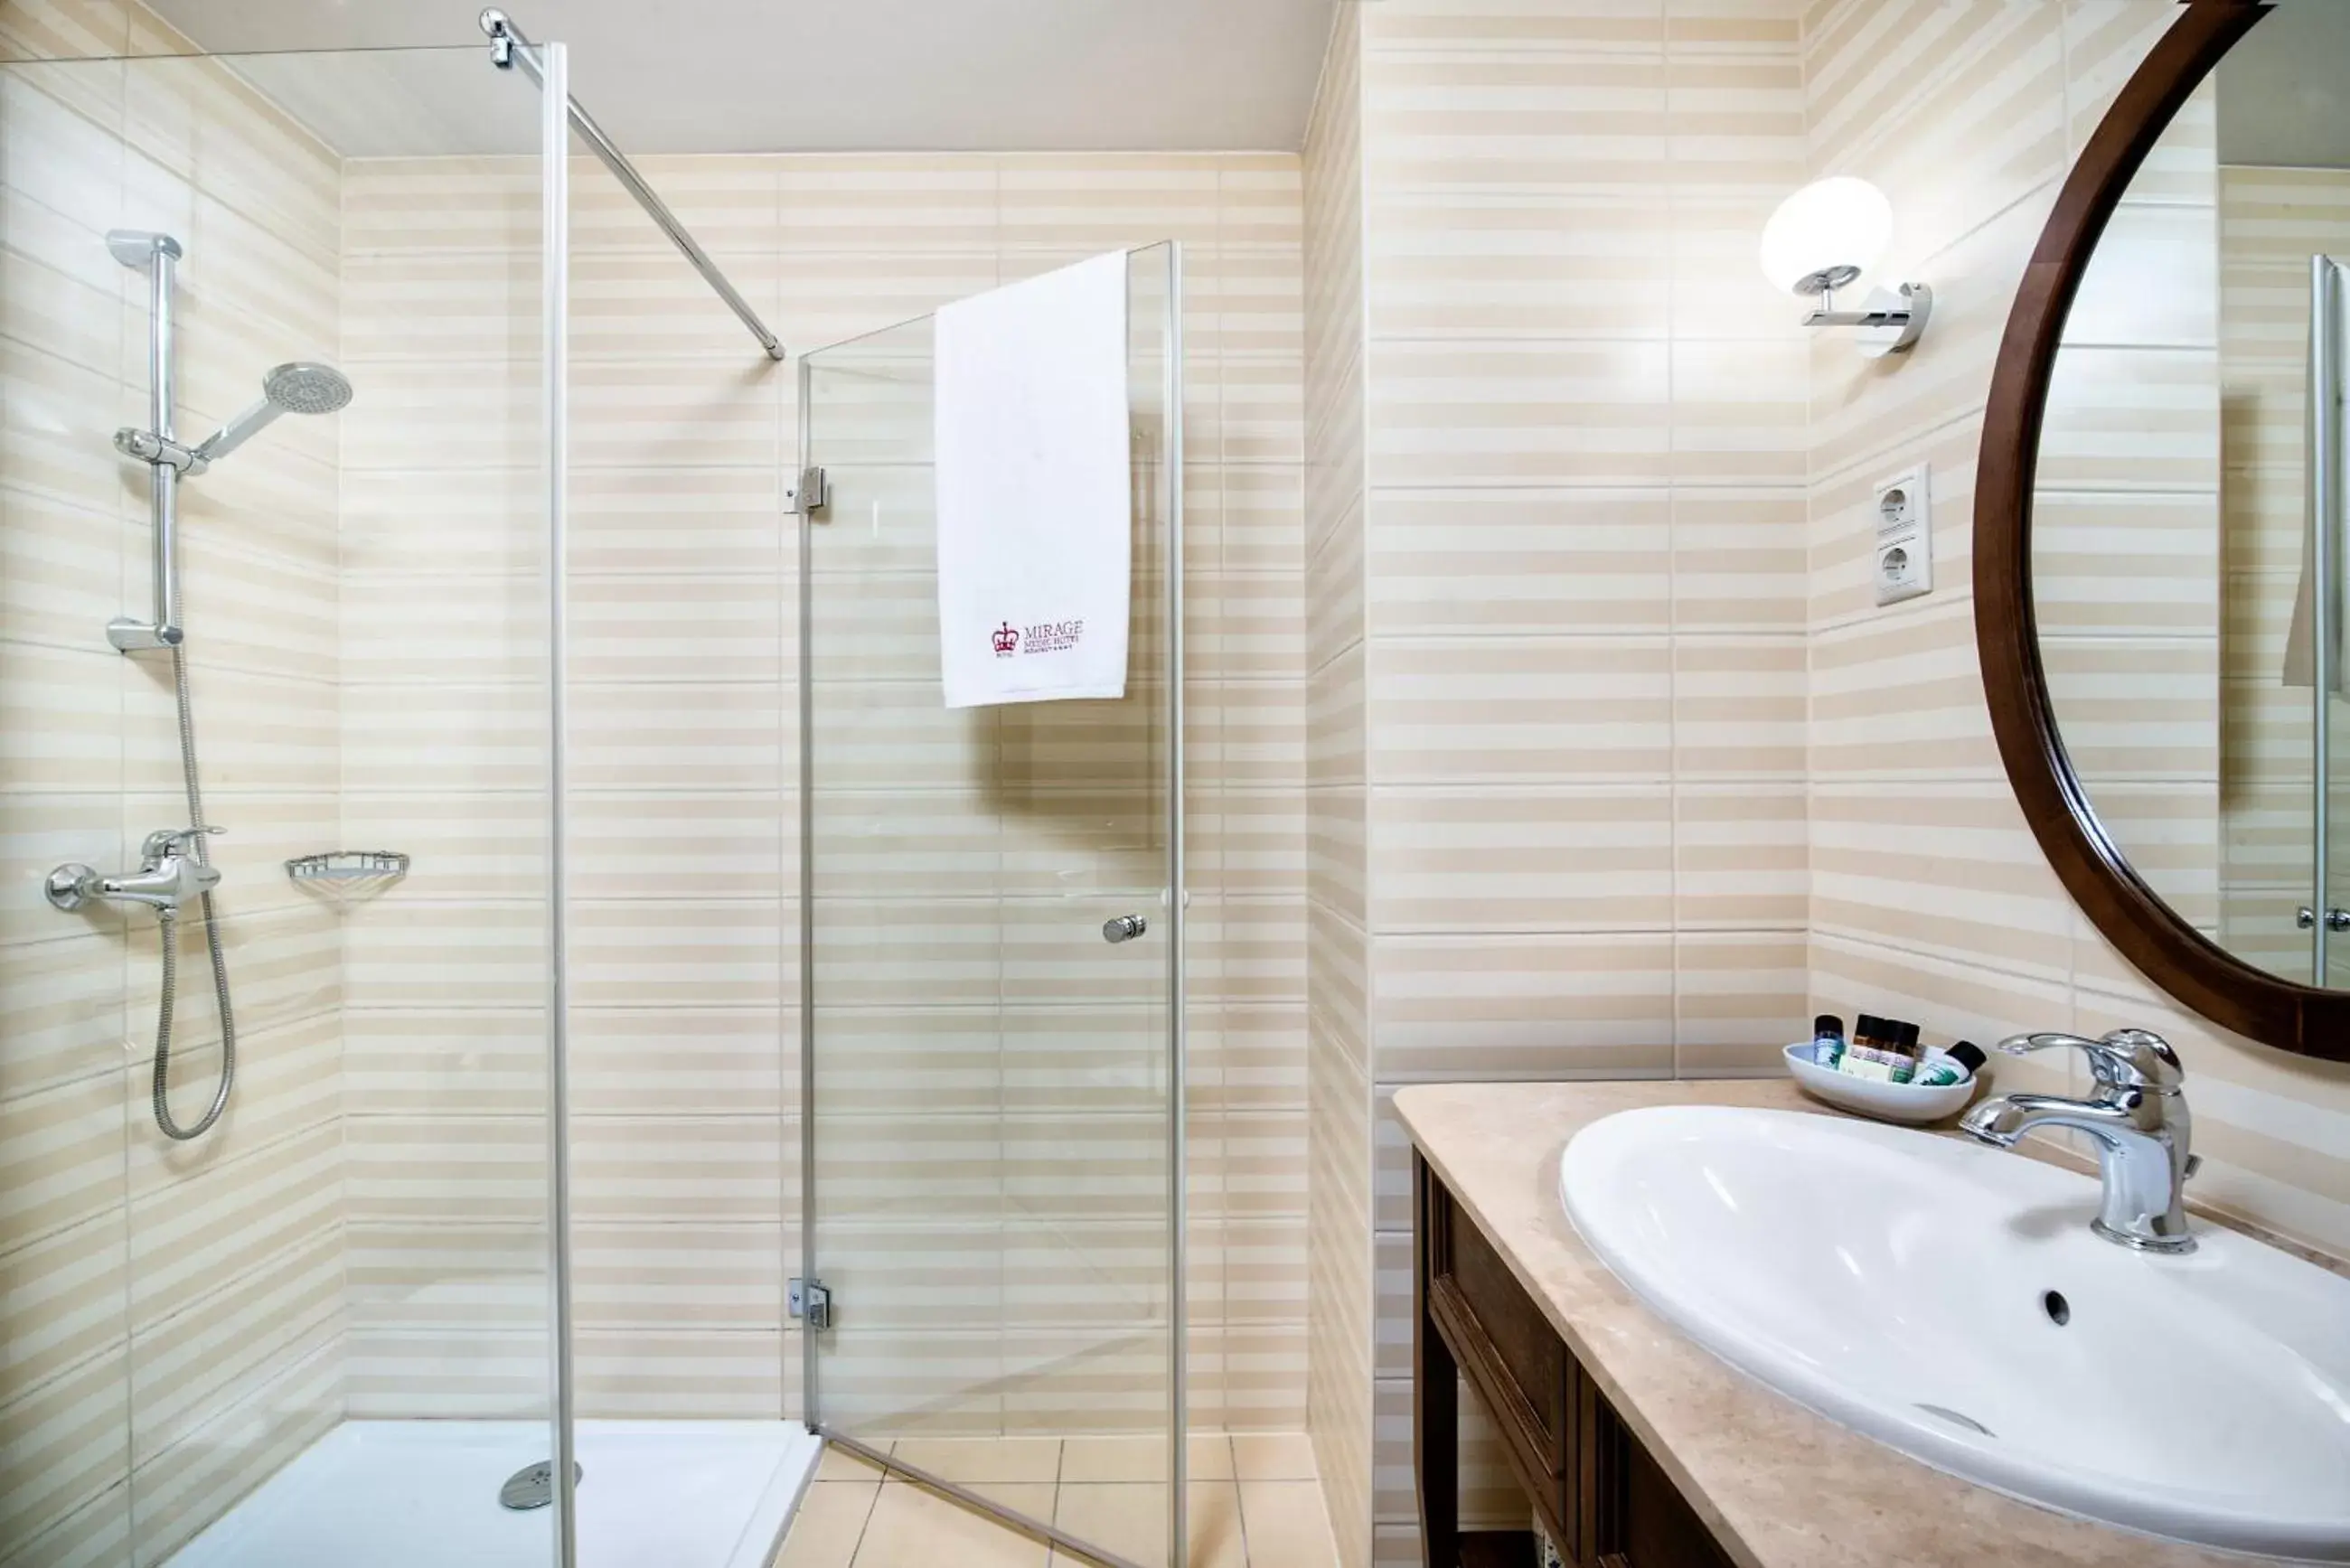 Shower, Bathroom in Mirage Medic Hotel